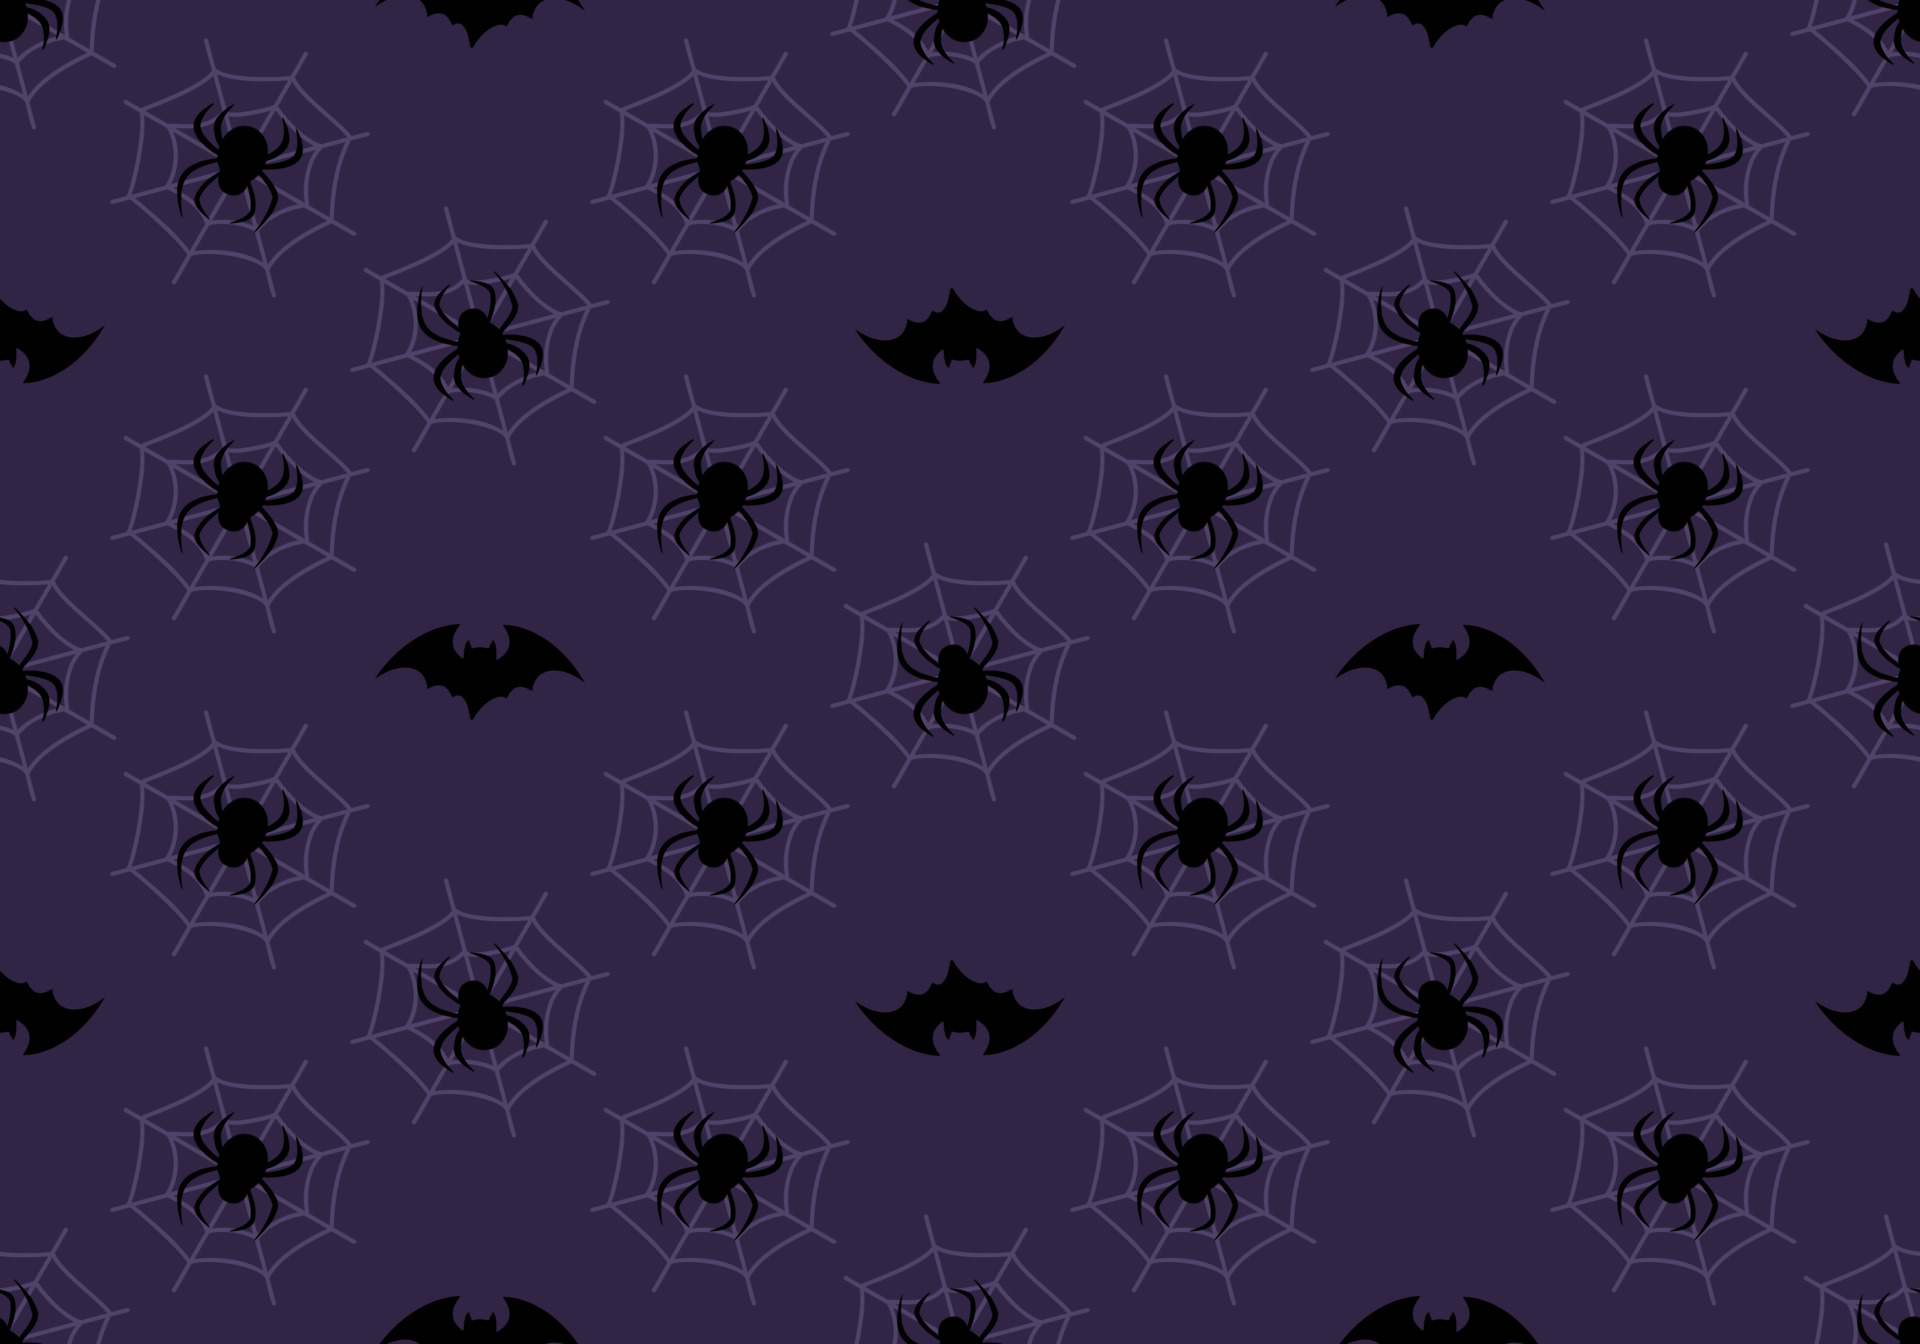 Dark Purple Halloween Pattern: Hãy khám phá một mẫu hoa văn Halloween đặc biệt với màu tím đậm. Những hình ảnh quen thuộc như bóng ma, cầu vồng rực rỡ và rắn hổ mang độc được thiết kế rất tinh tế và cuốn hút. Bức tranh màu tím sẽ mang đến cho bạn cảm giác sợ hãi nhưng cũng rất thú vị. Hãy khám phá và trải nghiệm nhé.